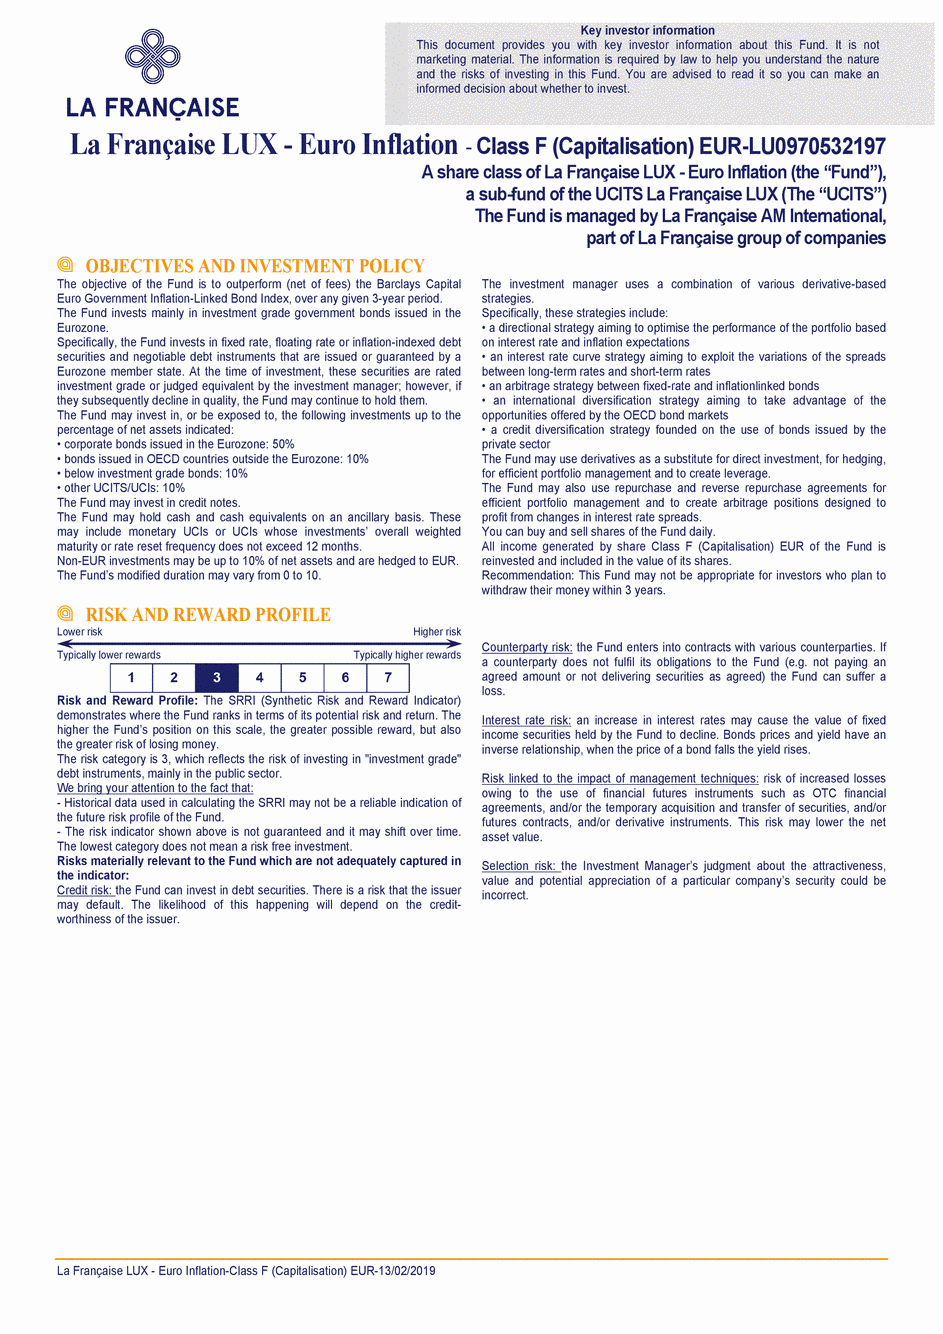 DICI La Française LUX - Euro Inflation - F (C) EUR - 13/02/2019 - English